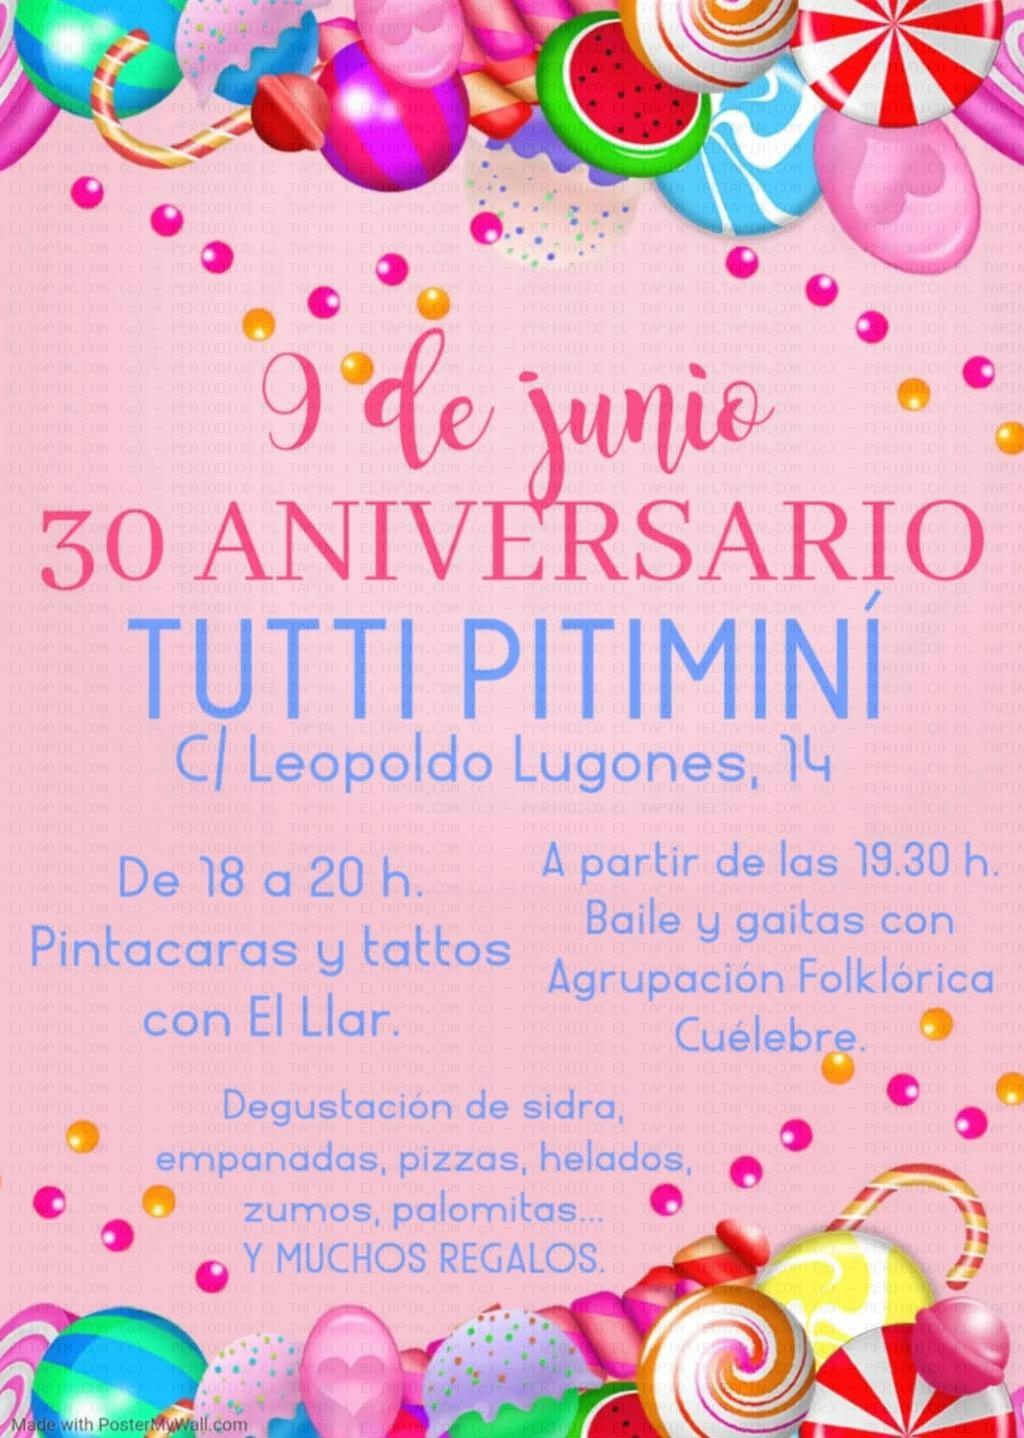 El Tapin - Tutti Pitiminí de Lugones cumple su trigésimo aniversario